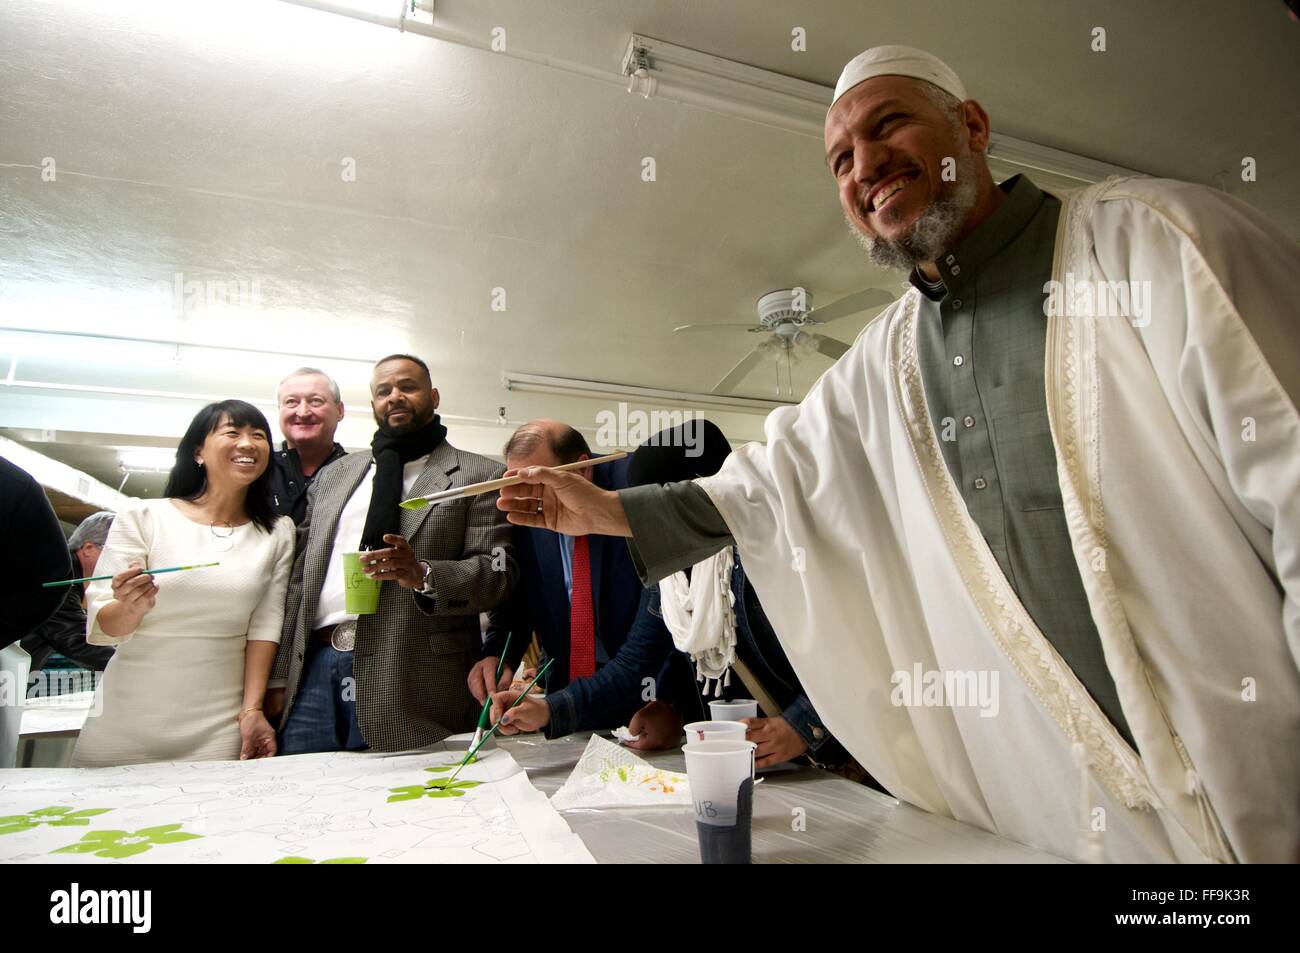 Nel corso di un mese di gennaio 9, 2016 comunità giornata di vernice Imam Muhammad Shehata pone con i membri di Philadelphia City Council. Foto Stock